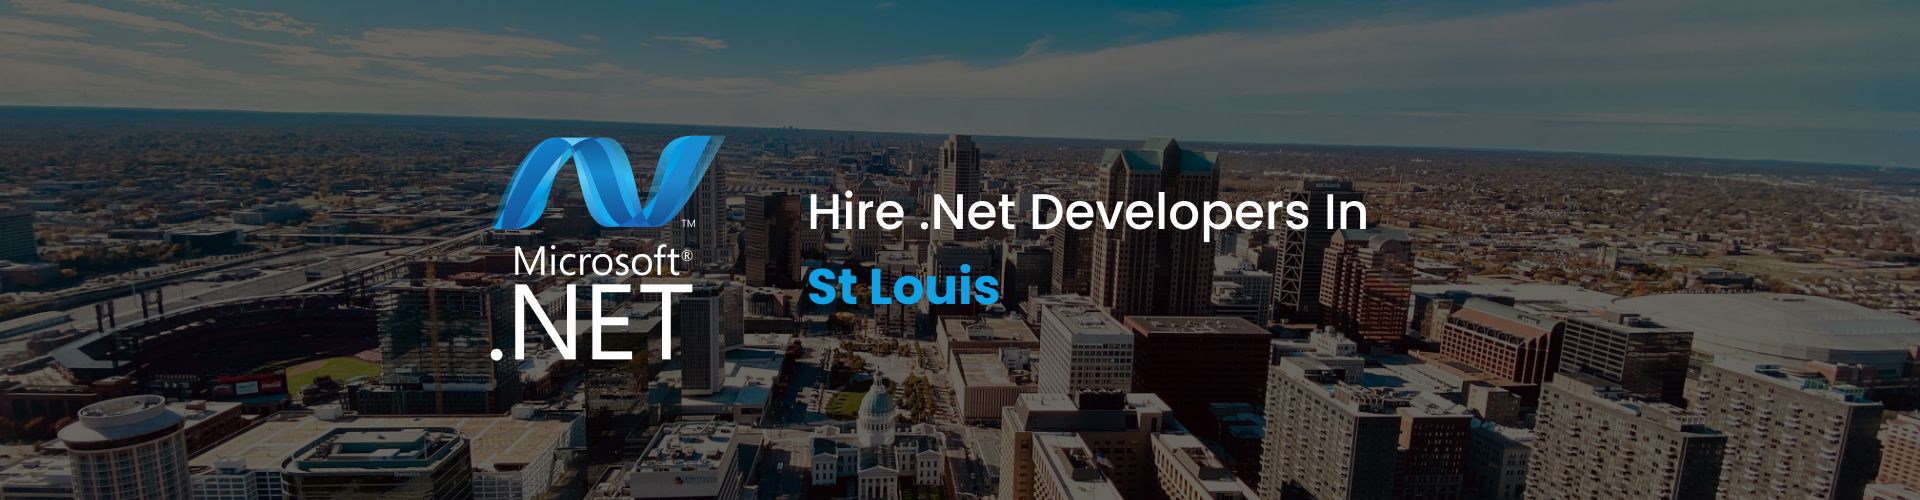 hire dot net developers in st louis